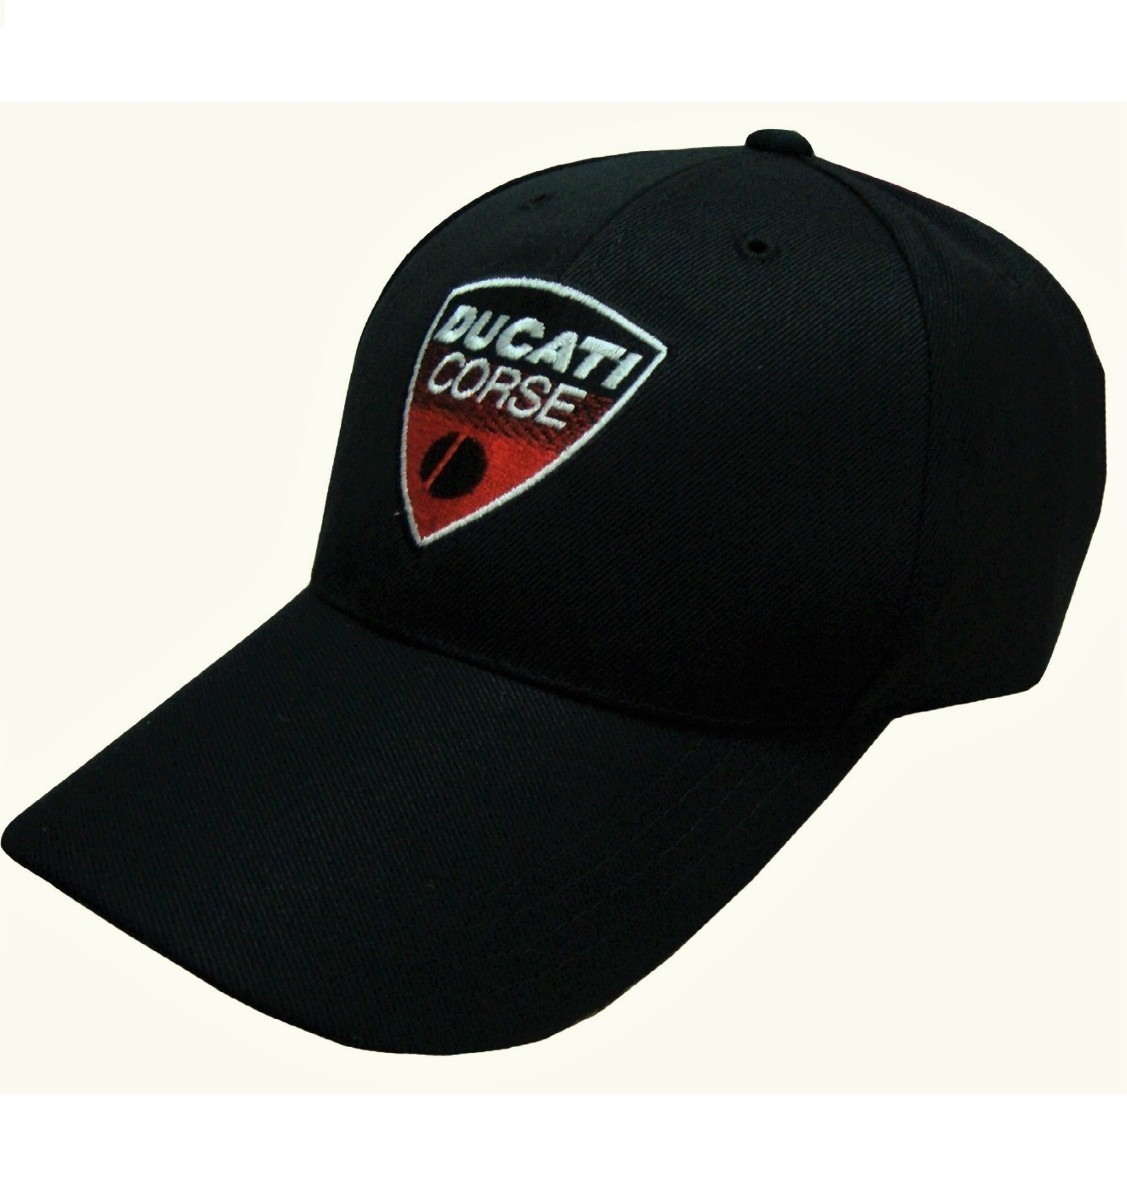 【送料無料】DUCATI ドゥカティ CAP キャップ 帽子 黒